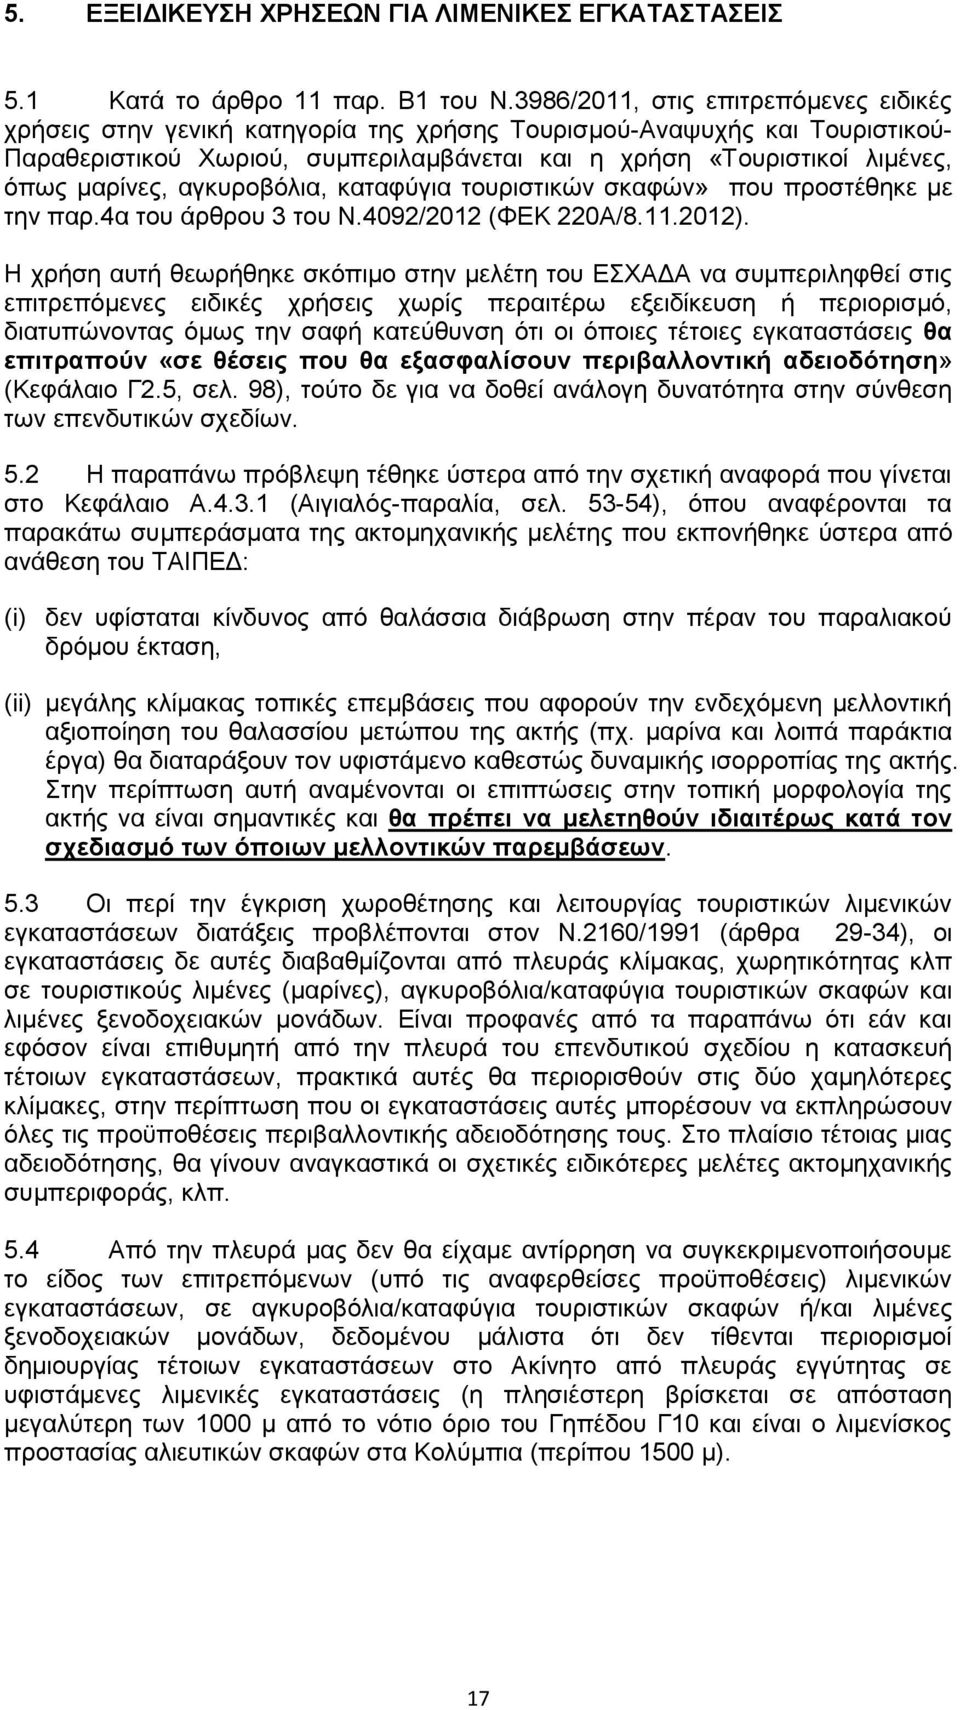 μαρίνες, αγκυροβόλια, καταφύγια τουριστικών σκαφών» που προστέθηκε με την παρ.4α του άρθρου 3 του Ν.4092/2012 (ΦΕΚ 220Α/8.11.2012).